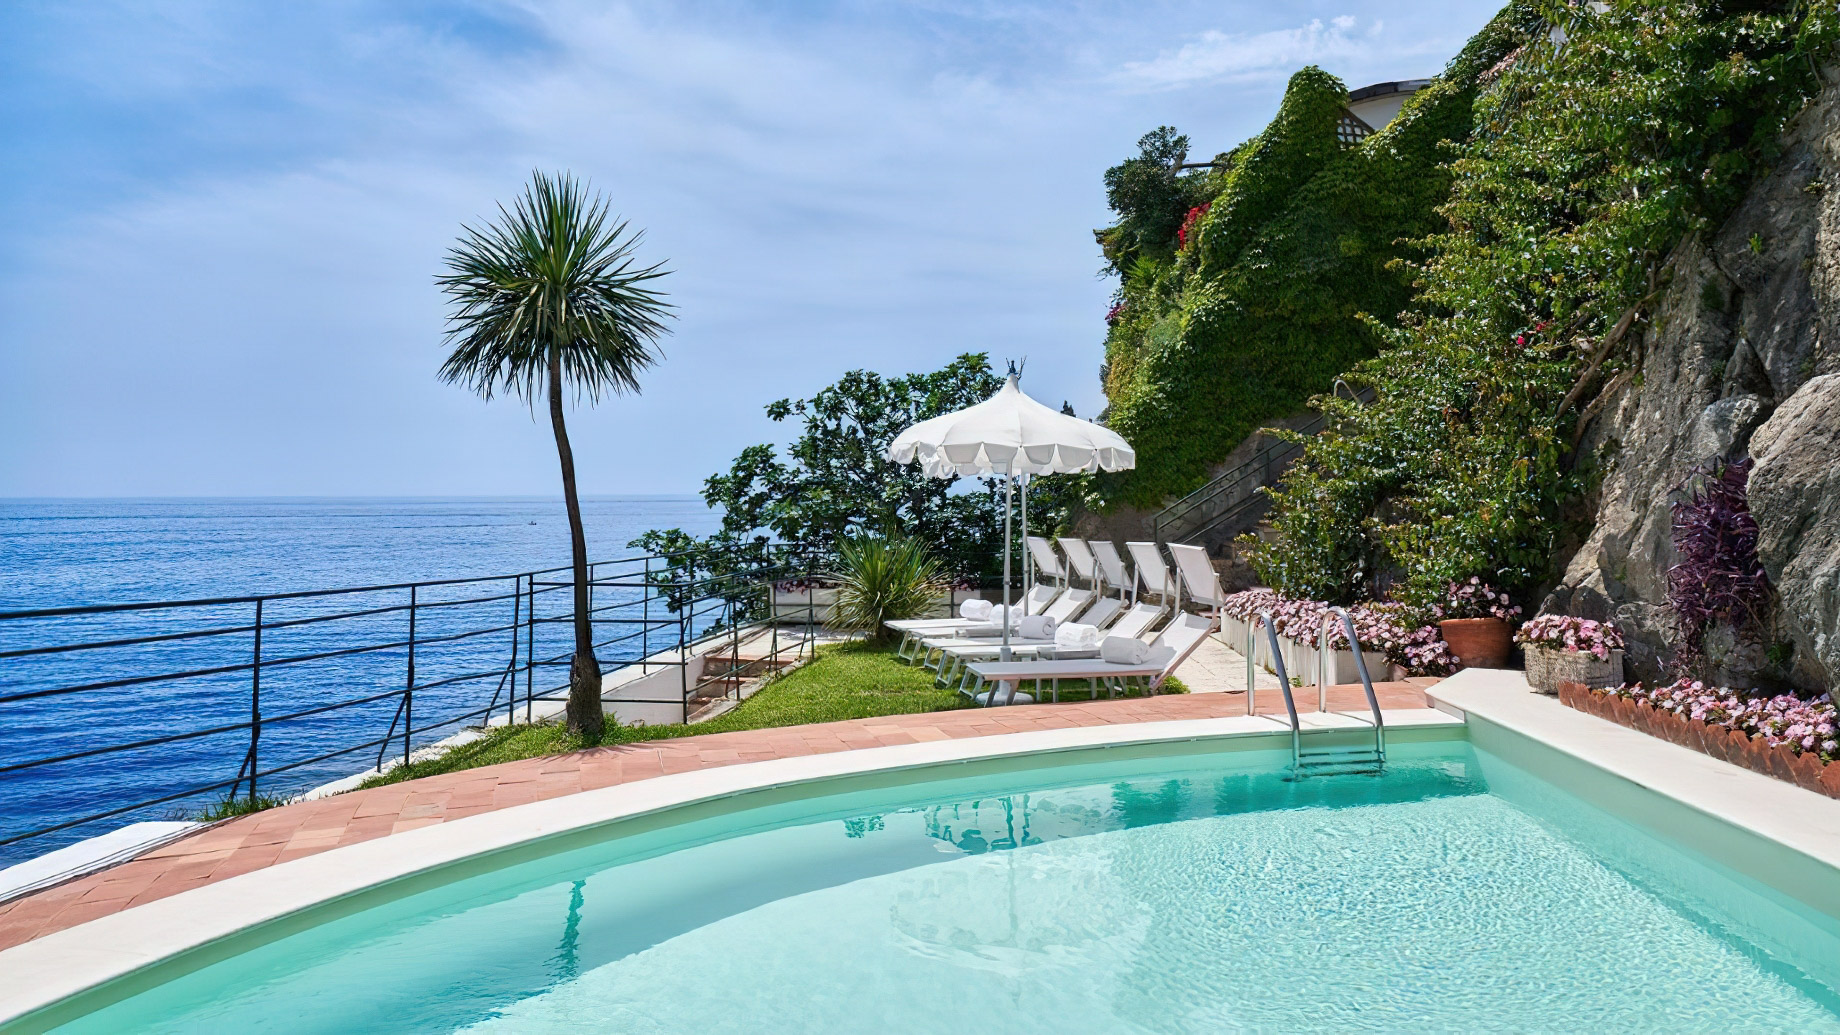 Palazzo Avino Hotel – Amalfi Coast, Ravello, Italy – Beach-Club